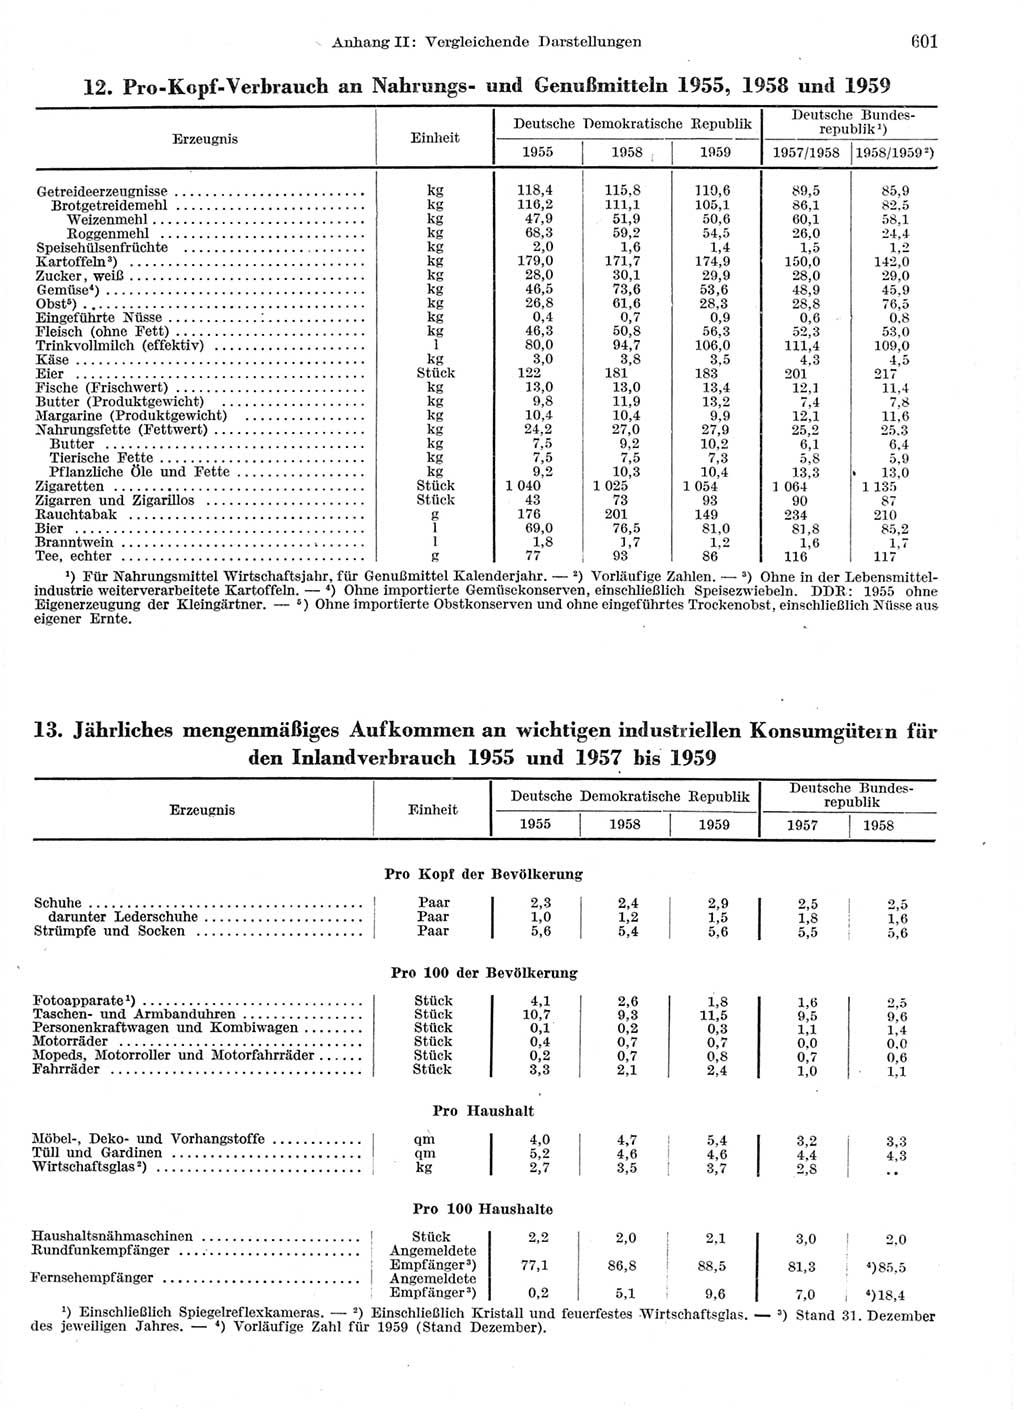 Statistisches Jahrbuch der Deutschen Demokratischen Republik (DDR) 1959, Seite 601 (Stat. Jb. DDR 1959, S. 601)